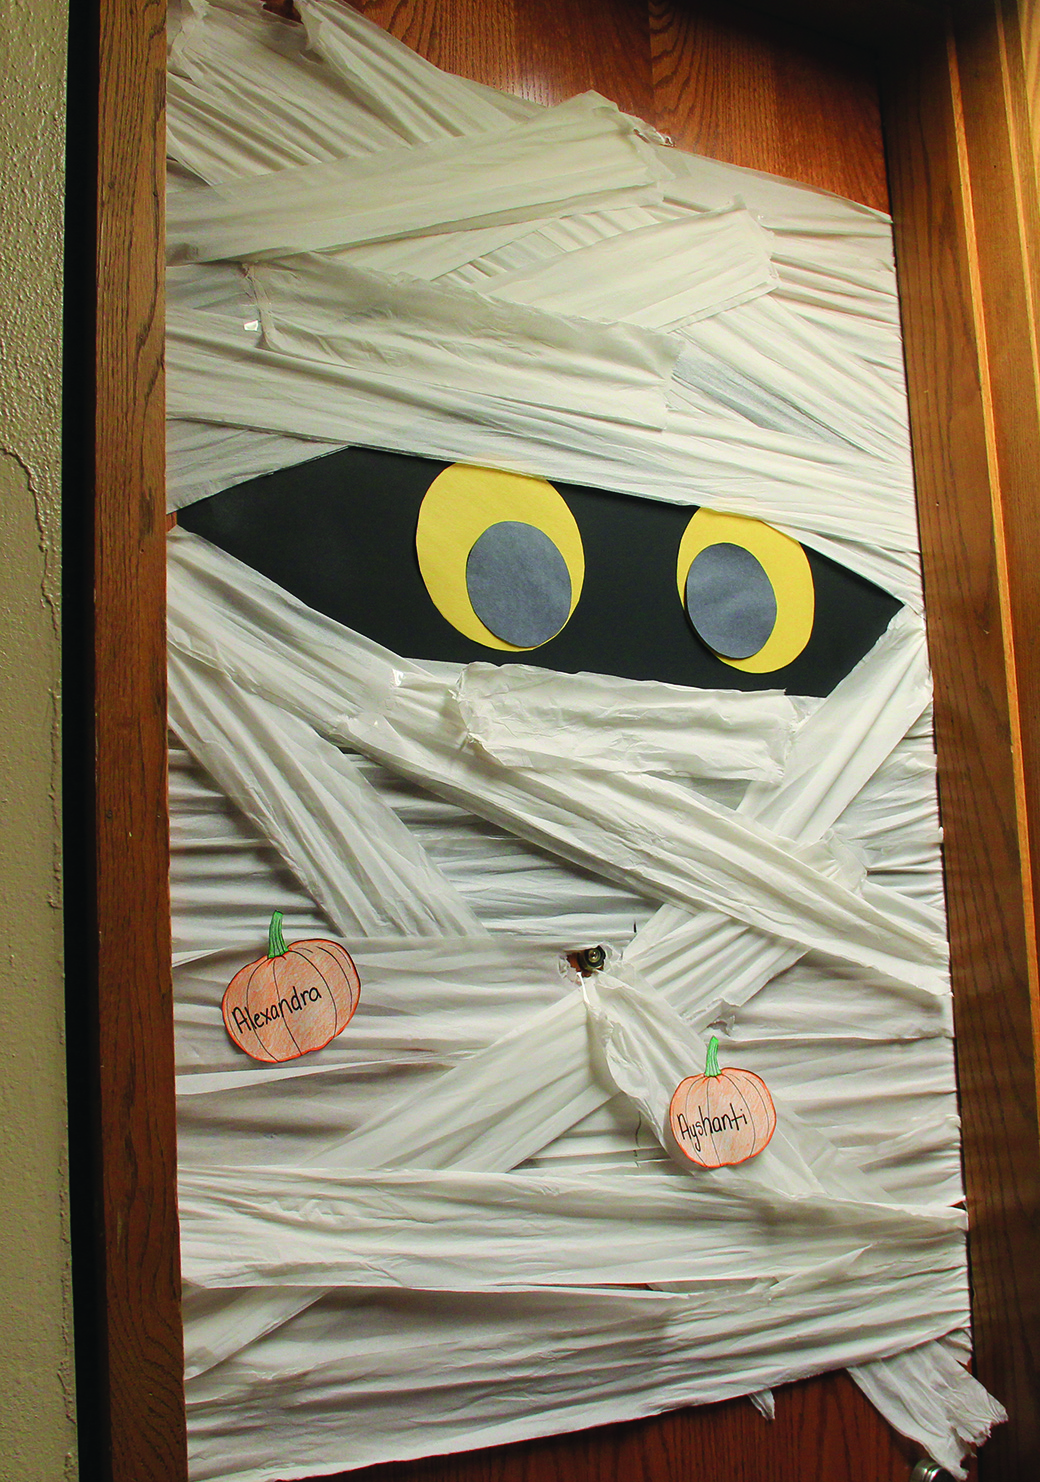 Students decorate dorm doors for Halloween, contest